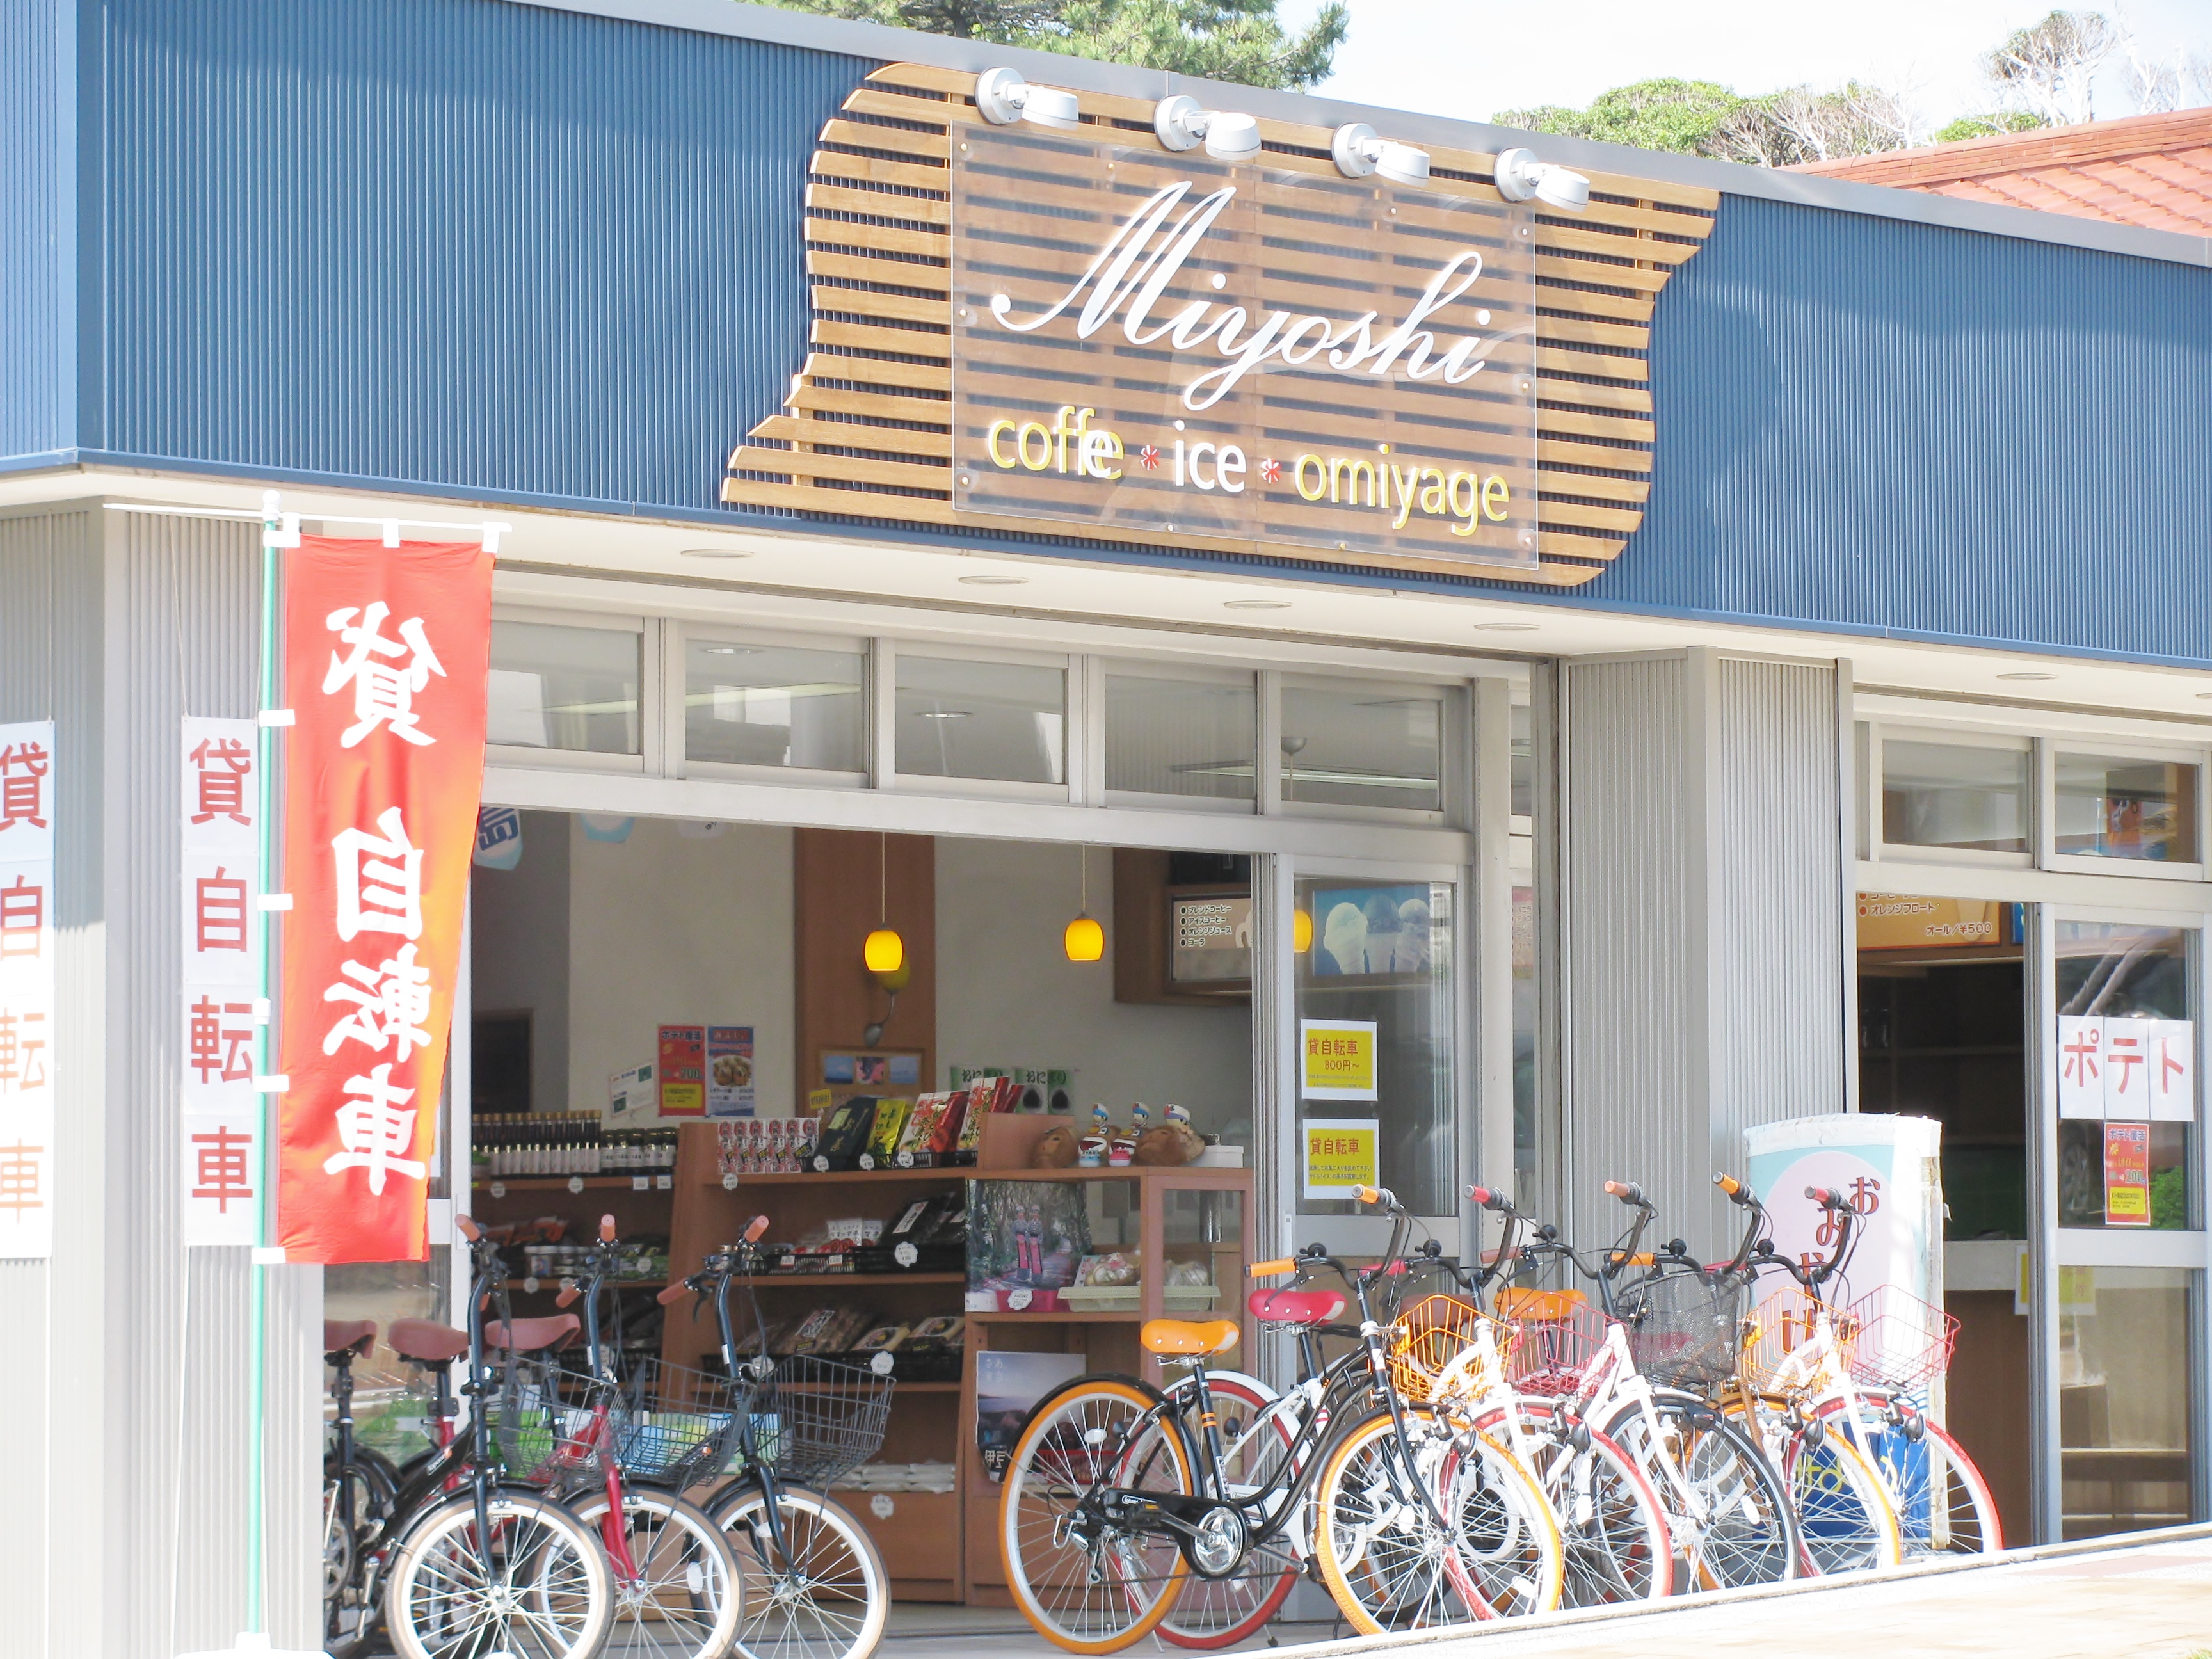 みよしみやげ品店 伊豆大島の土産品からアイスクリーム コーヒー レンタサイクル等 お客様へサービス提供に努めているお店です